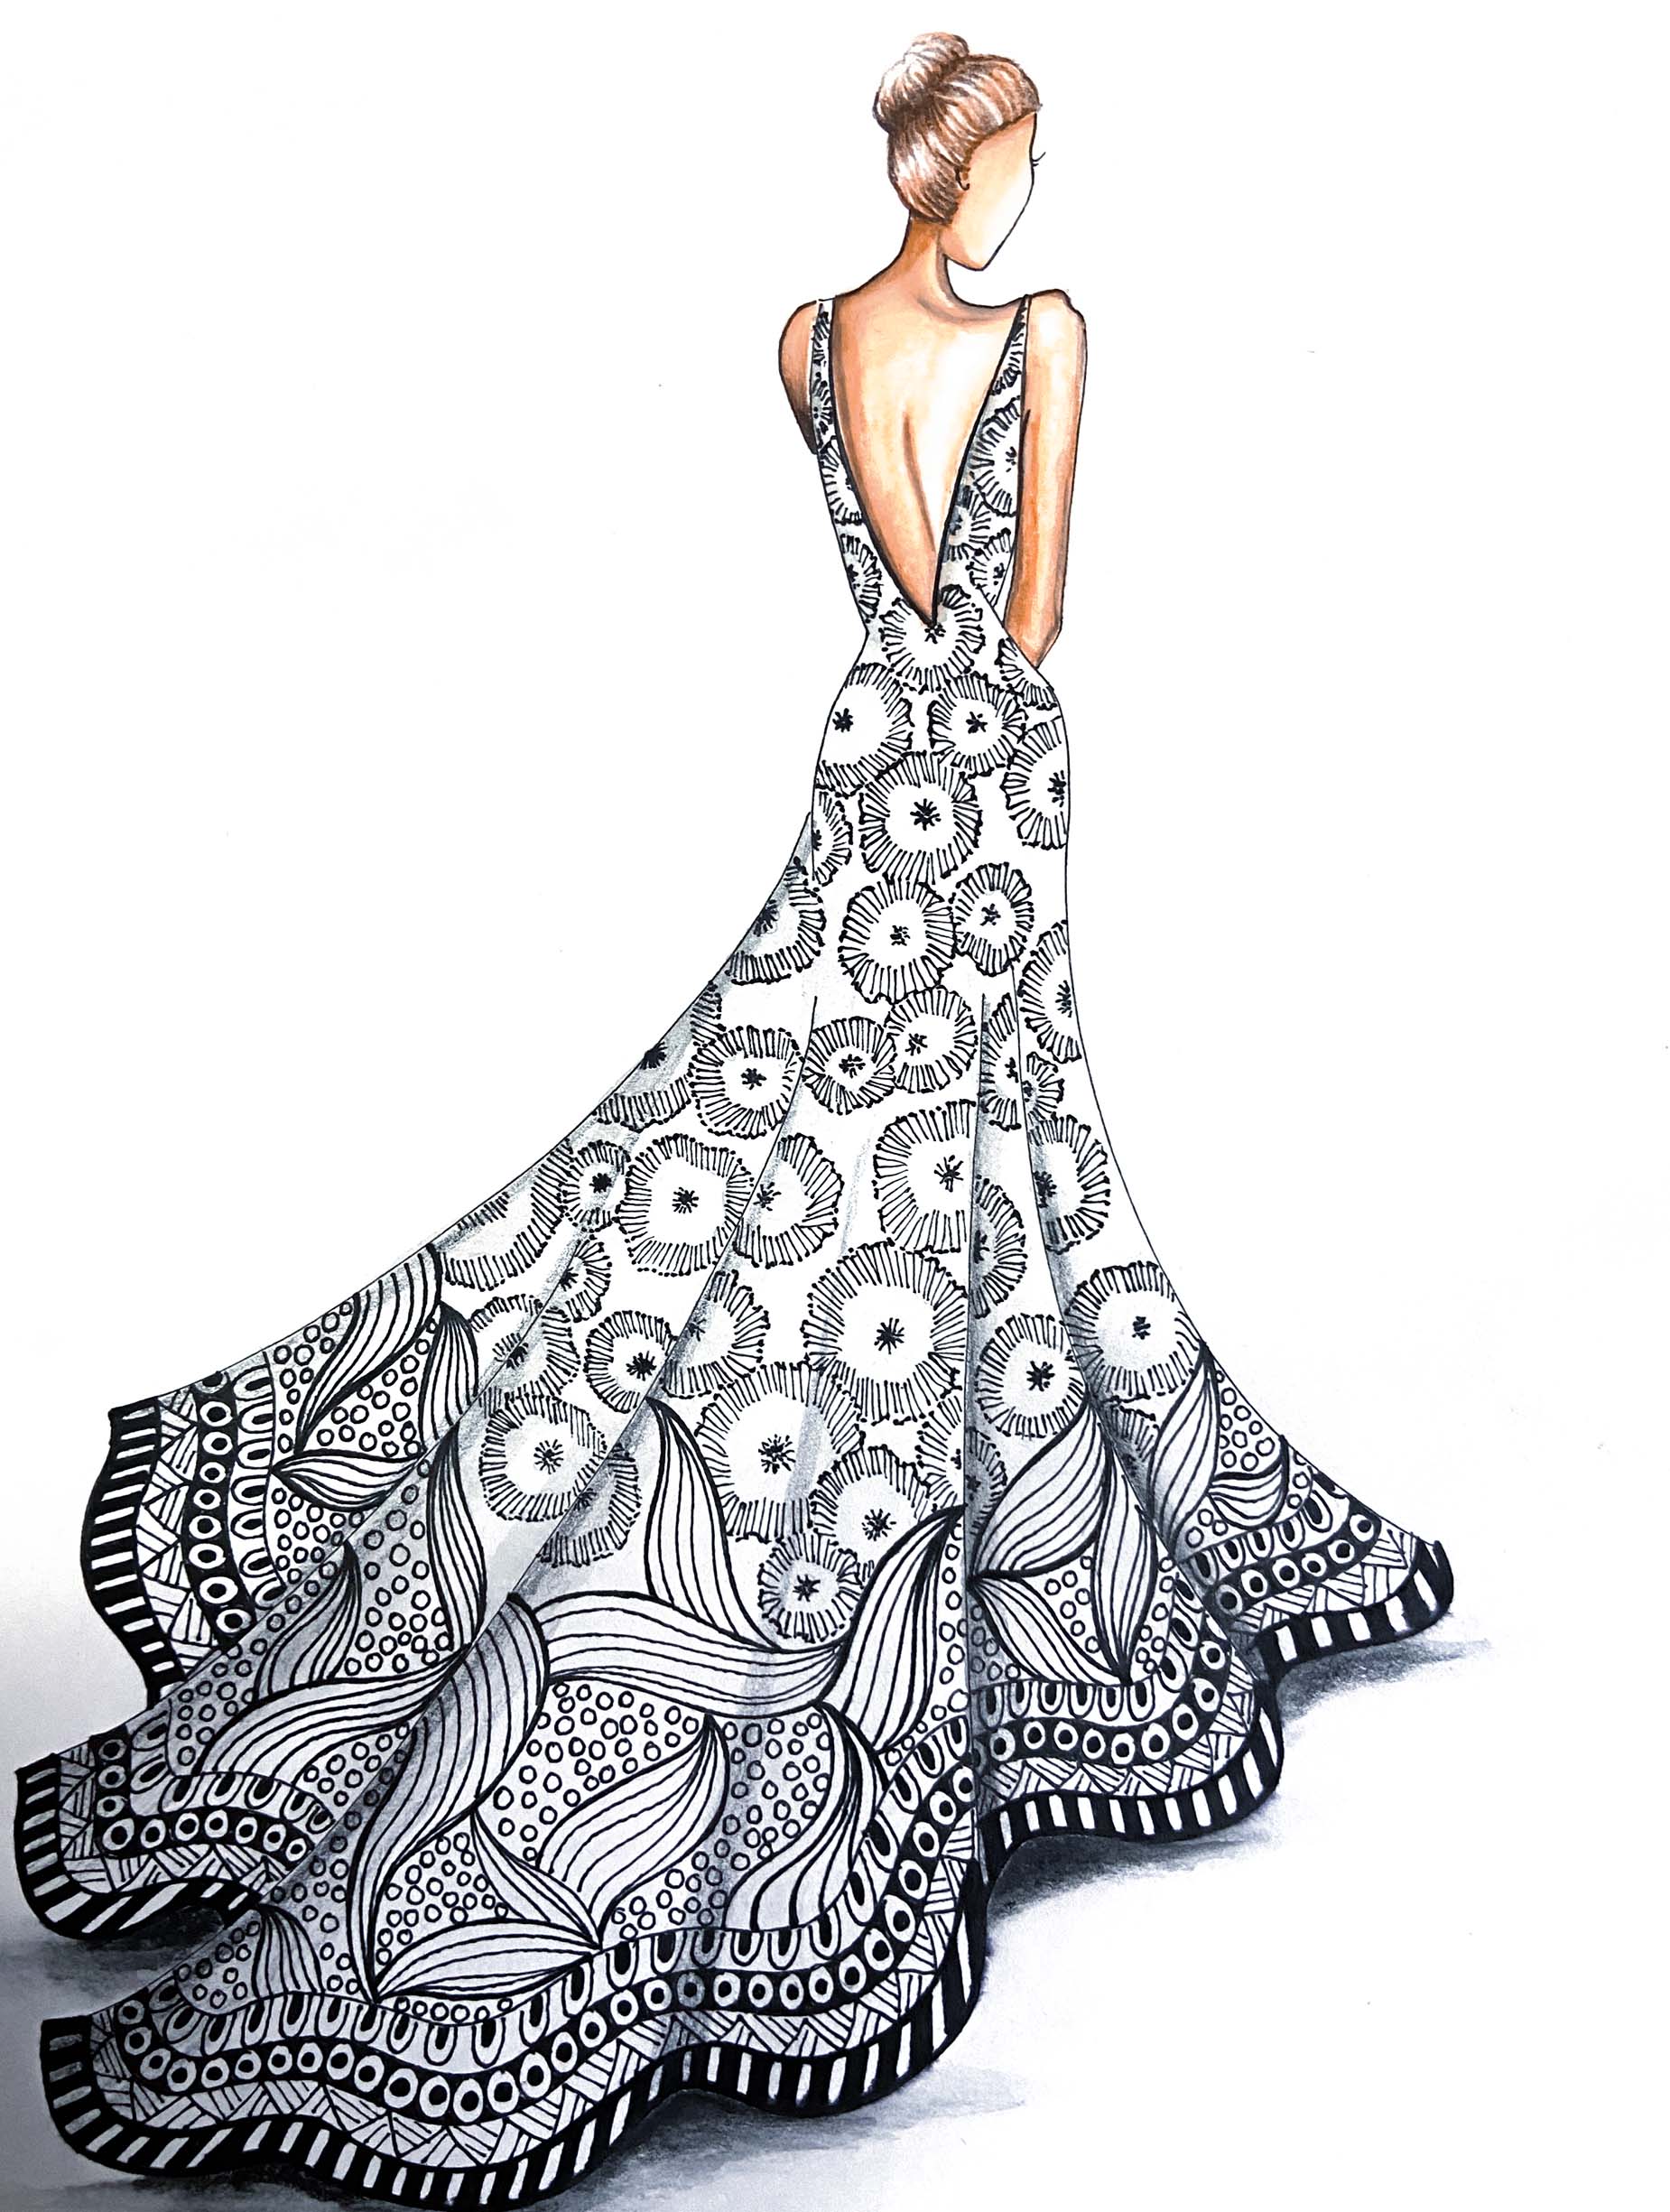 Fashion illustration with mandala design by Bongdiva